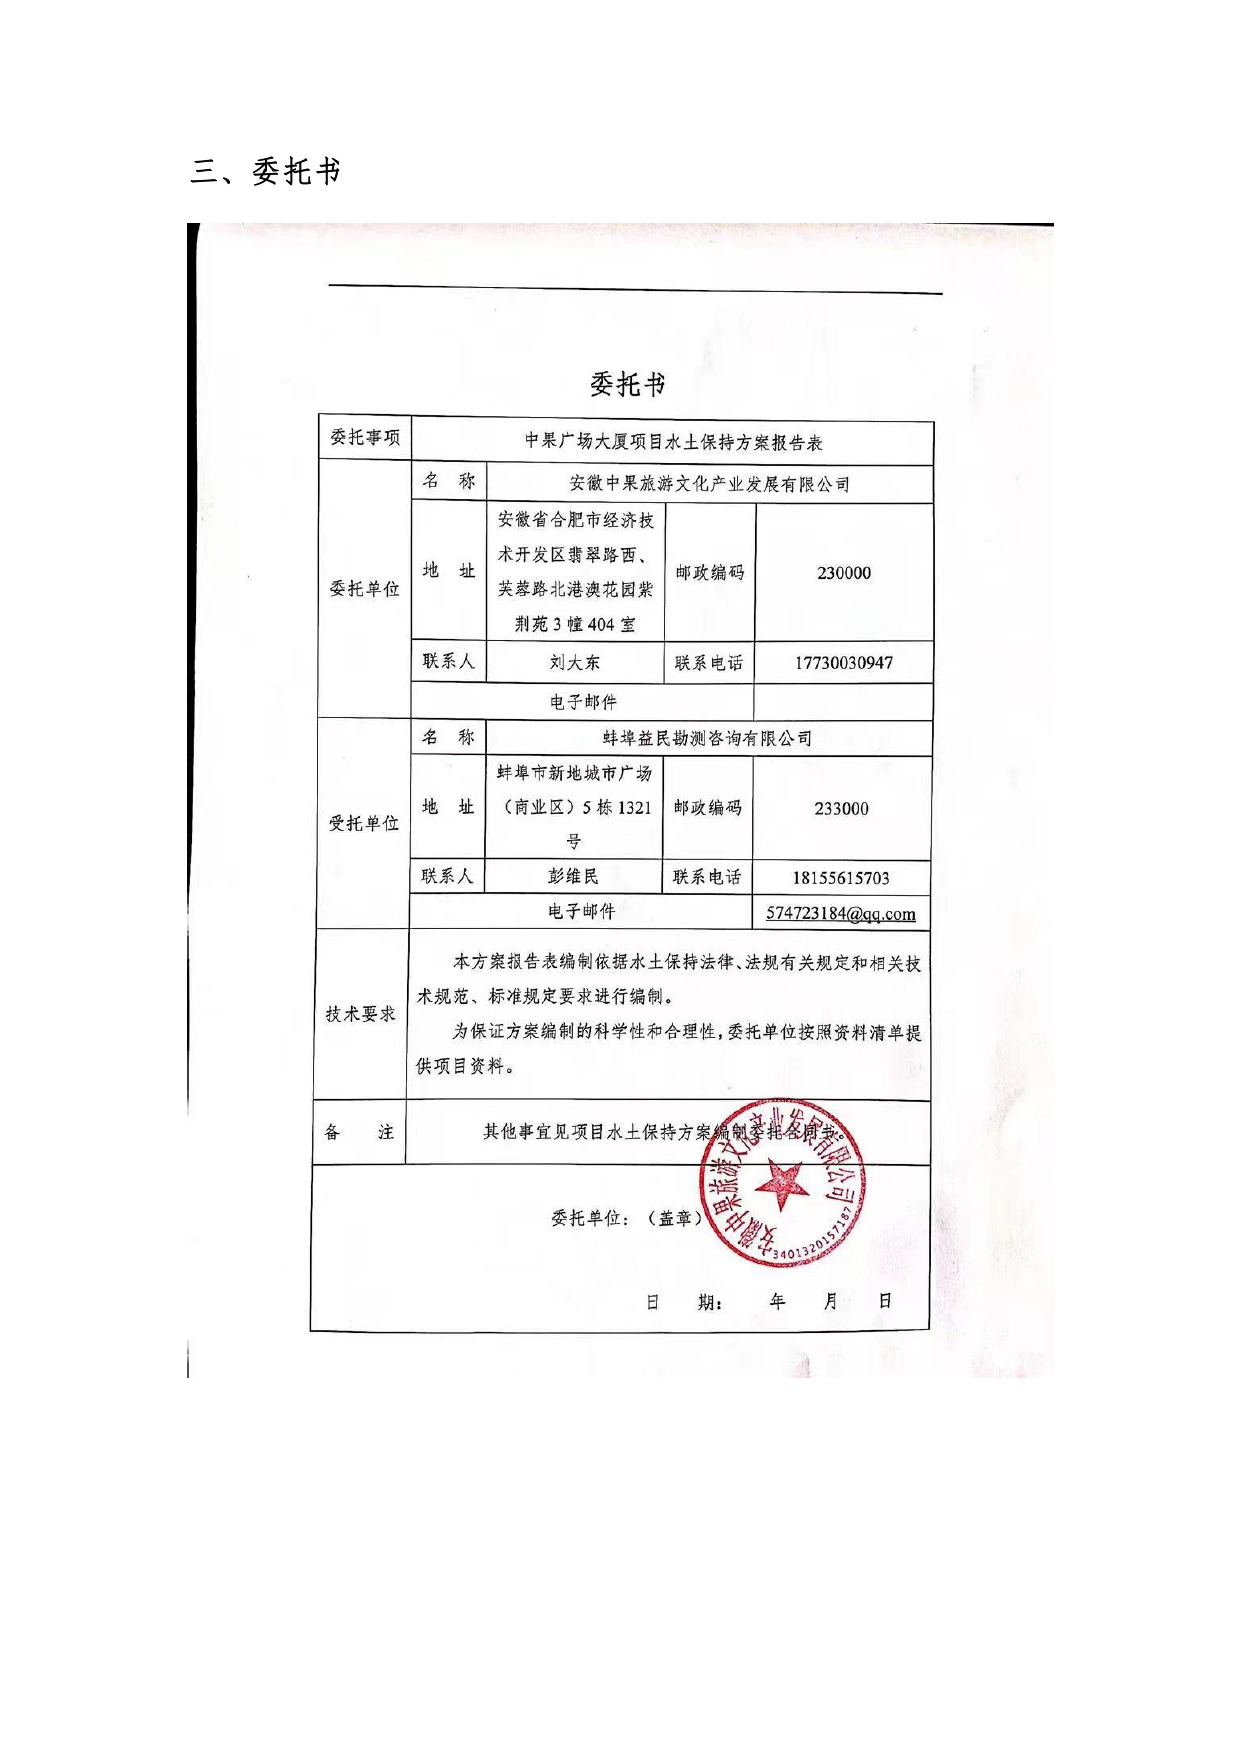 01-中果广场大厦项目水土保持报告表-打印_page-0007.jpg